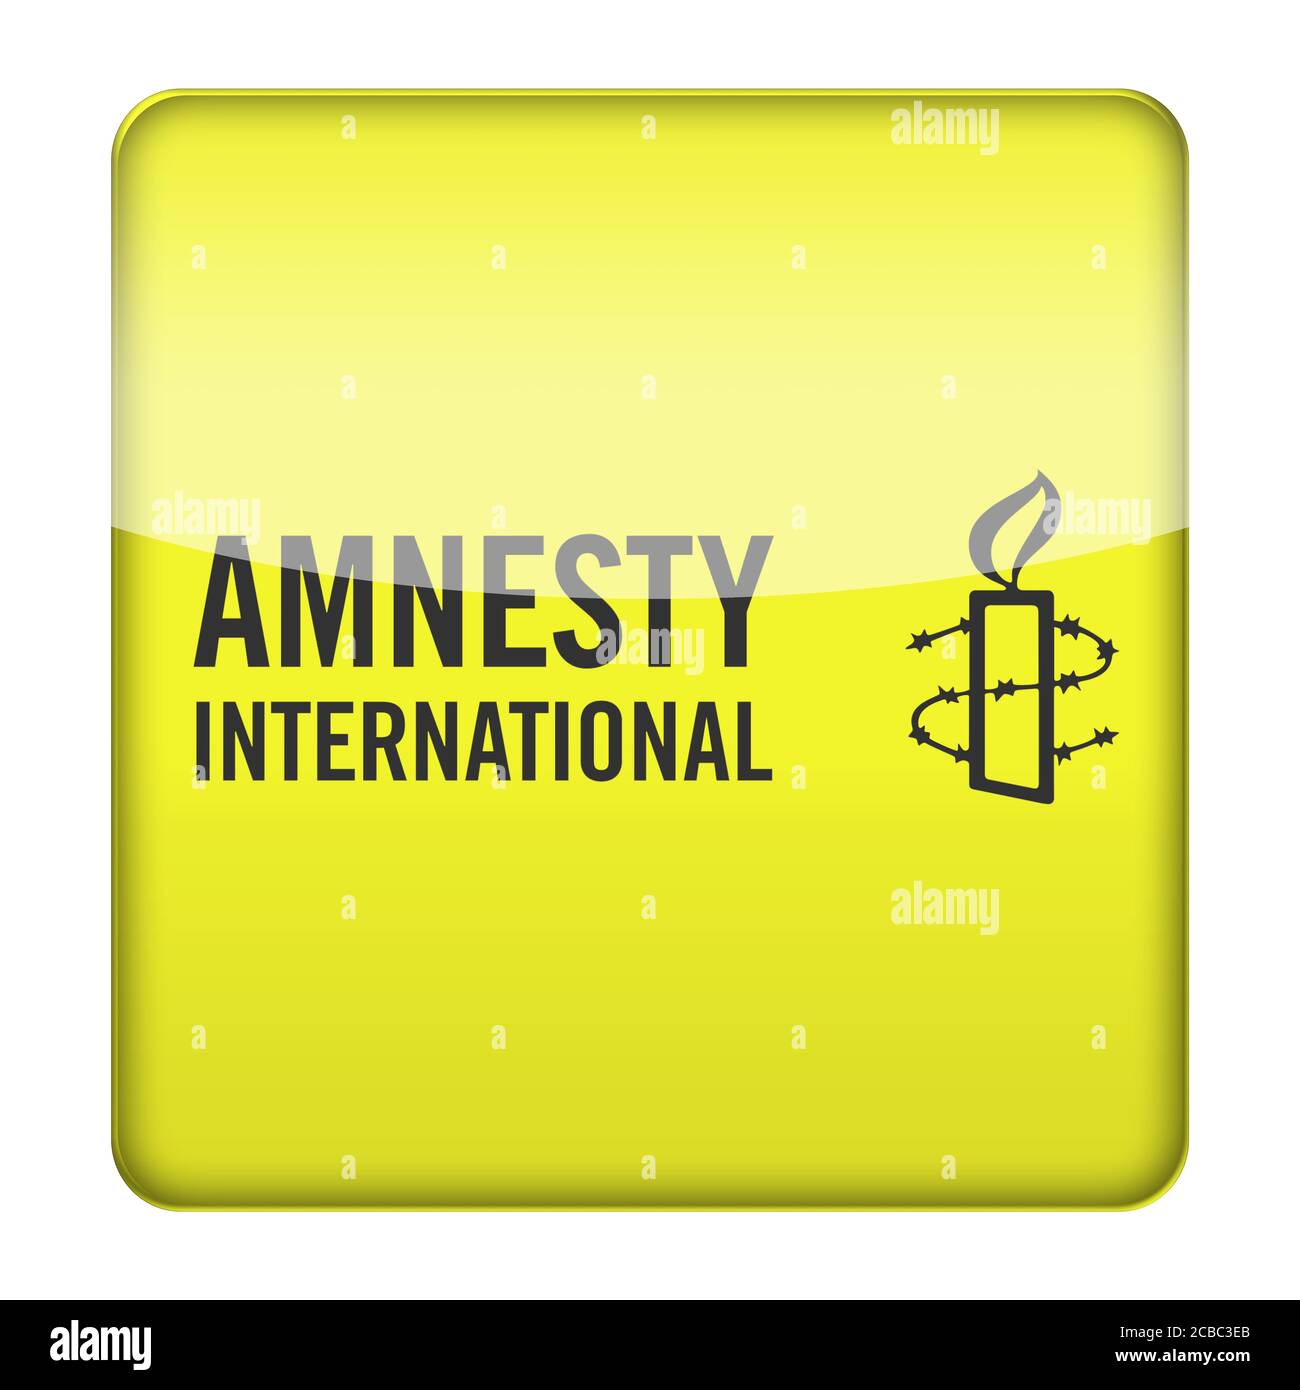 Amnesty International logo Stock Photo